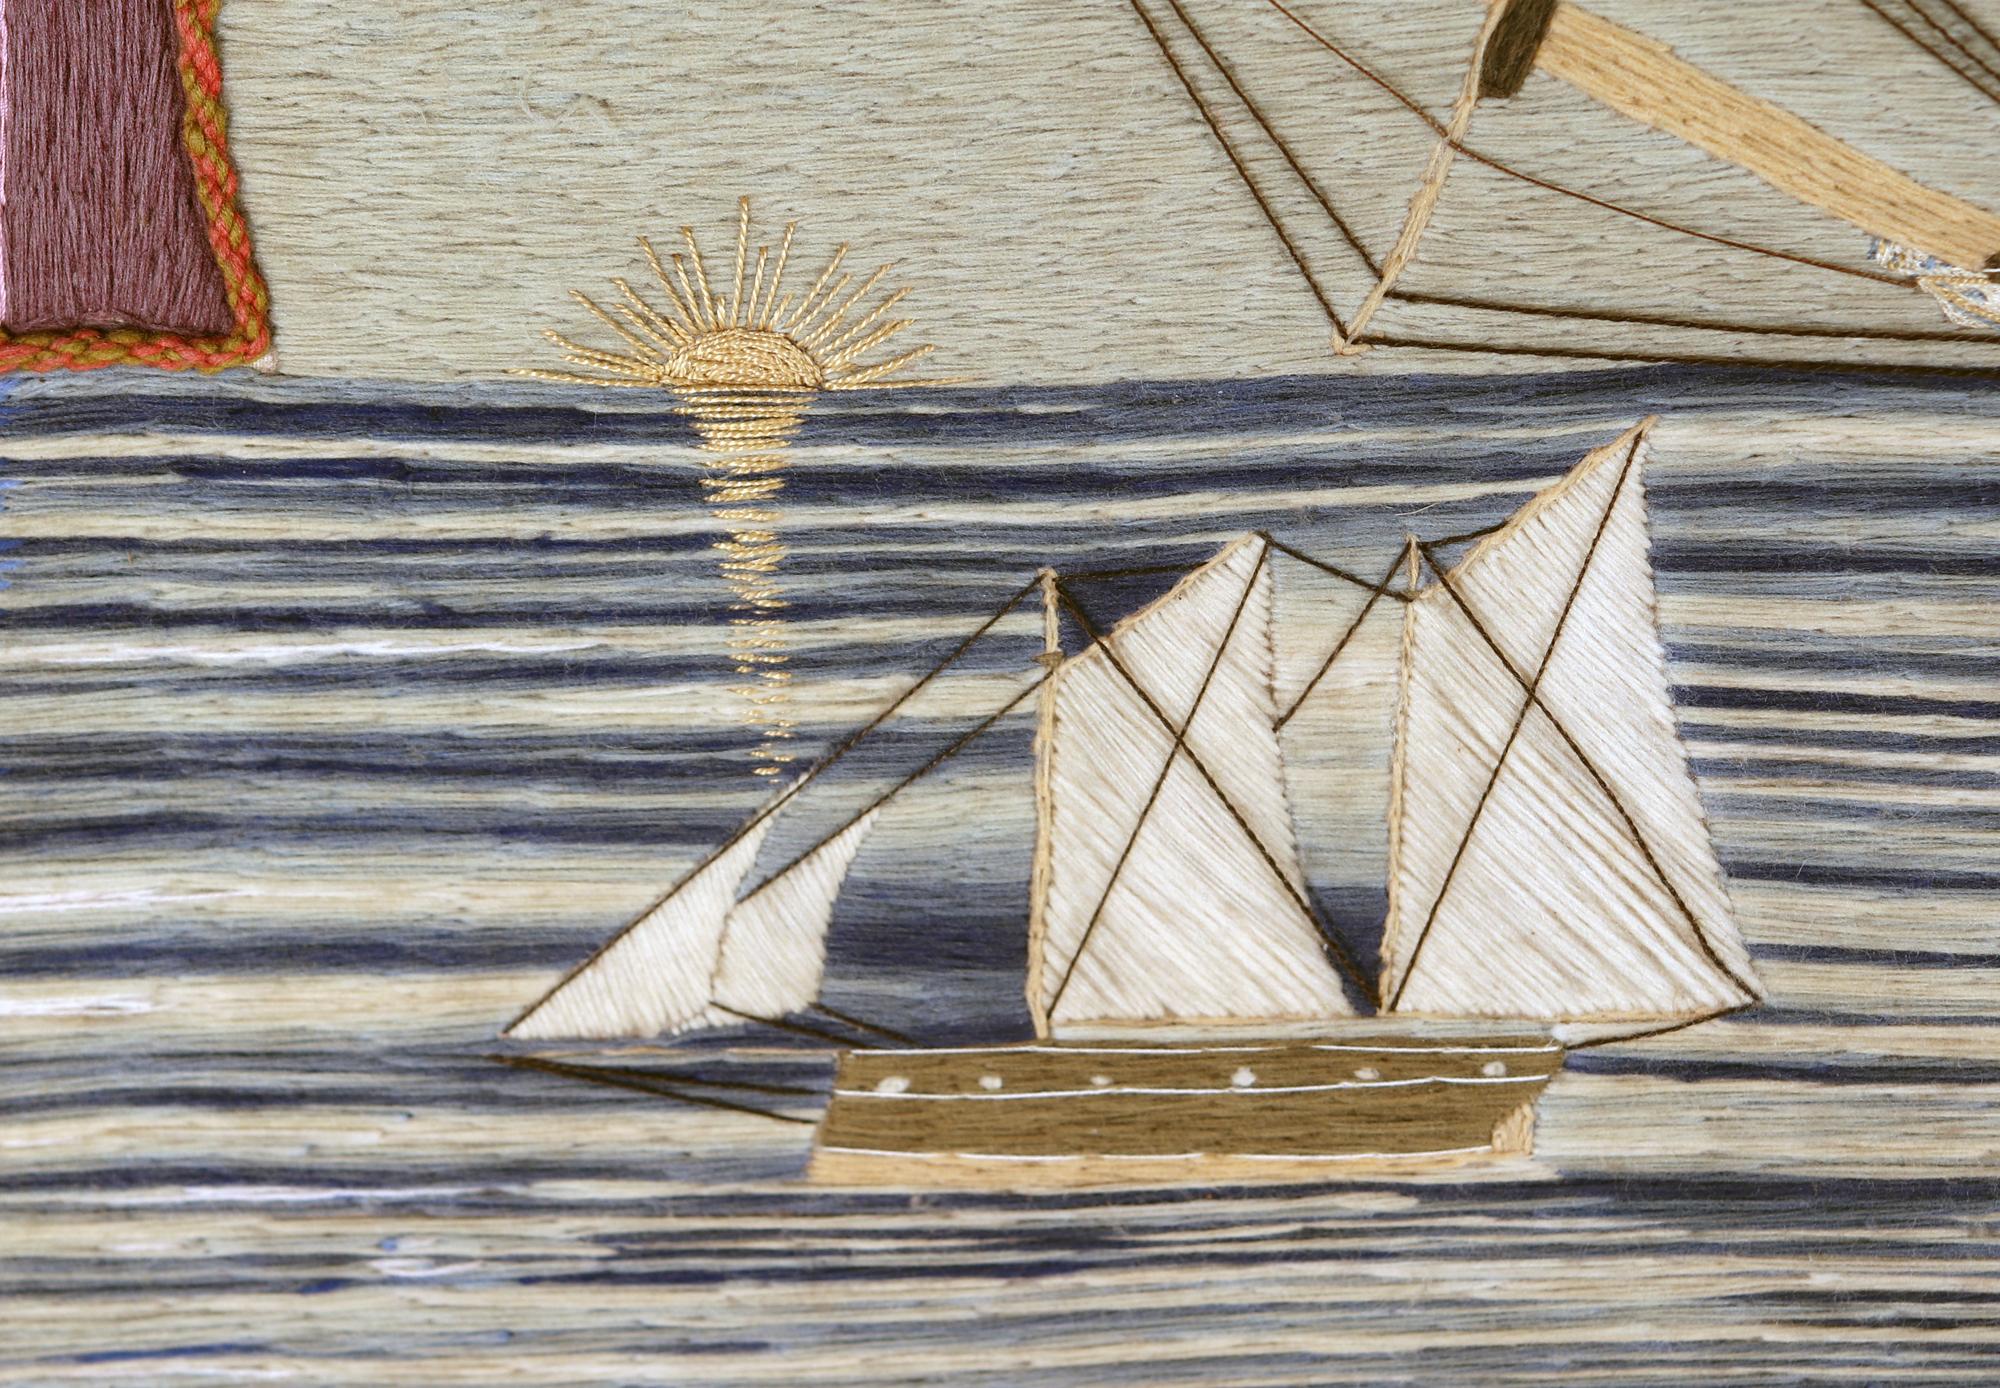 Britisches Matrosenwollwerk von Royal Navy Schiff auf See (Spätes 19. Jahrhundert)